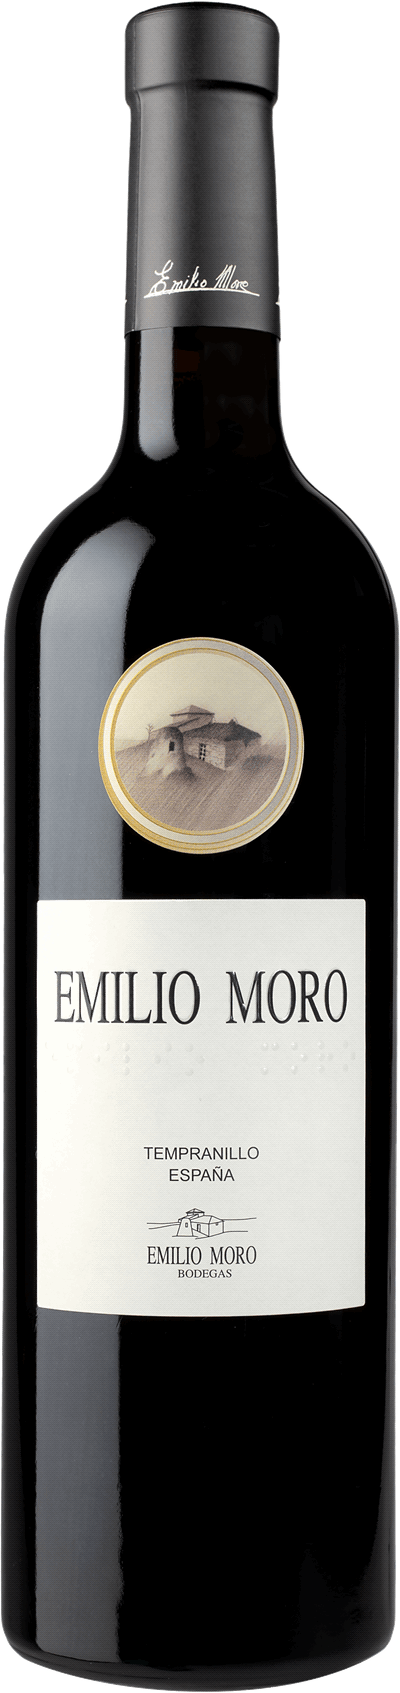 Emilio Moro 